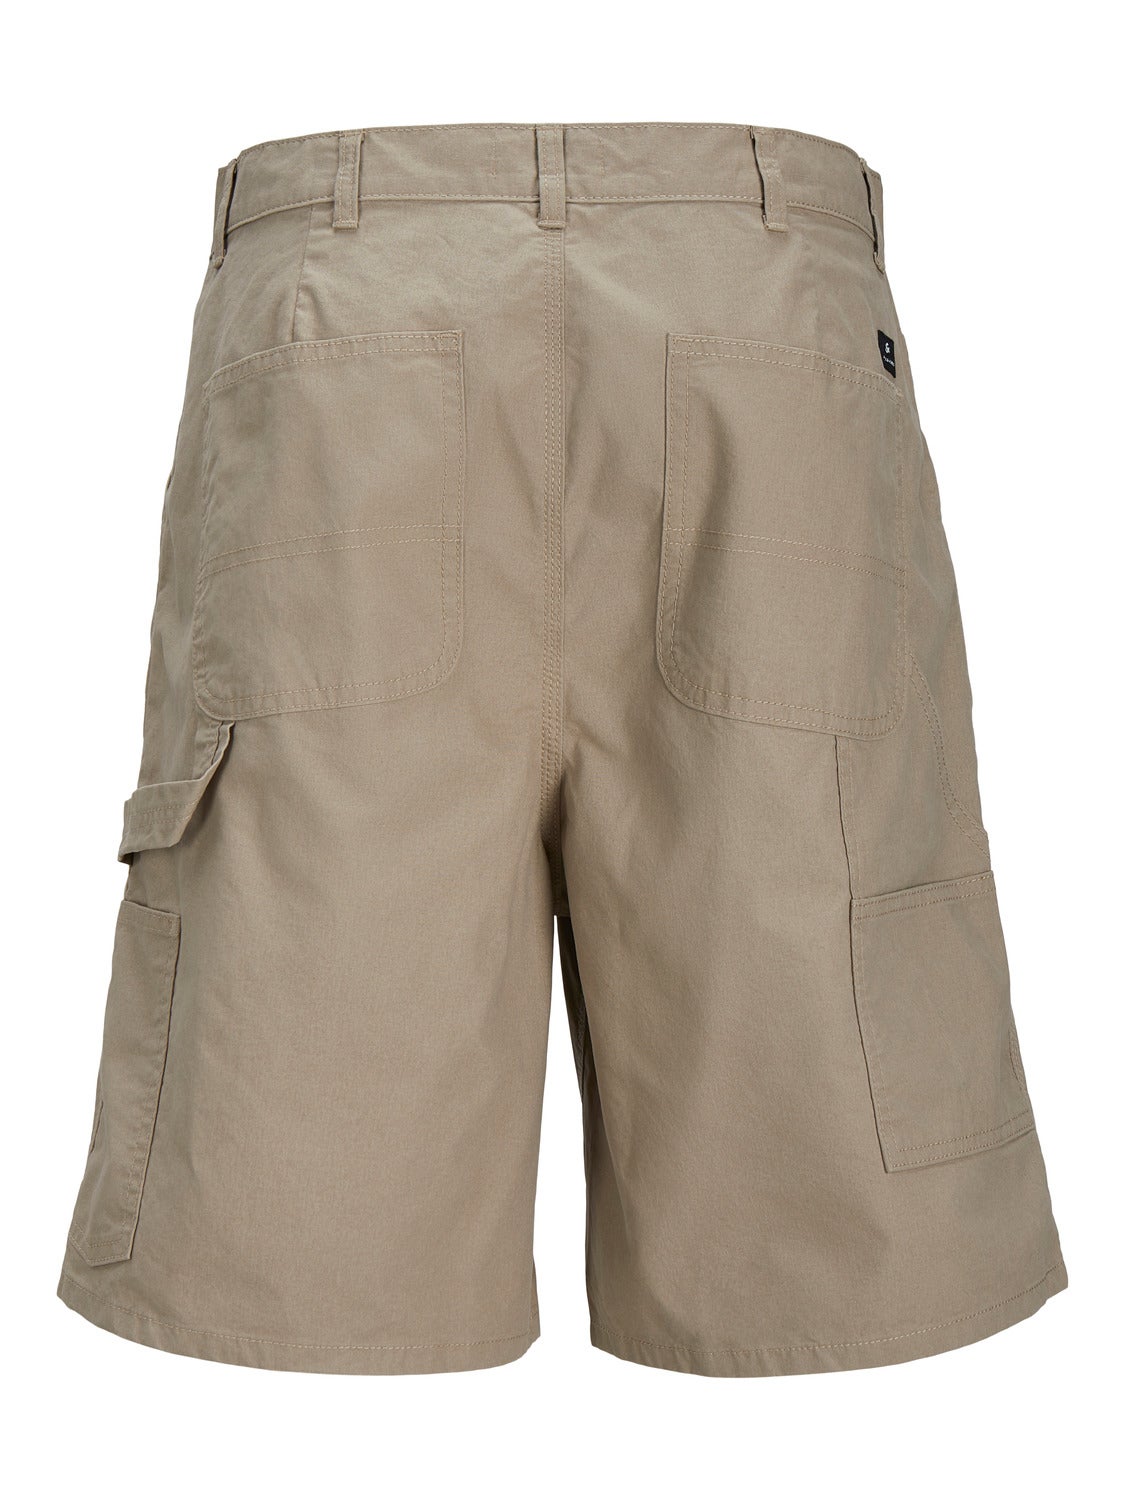 Regular Fit 5-pocket shorts